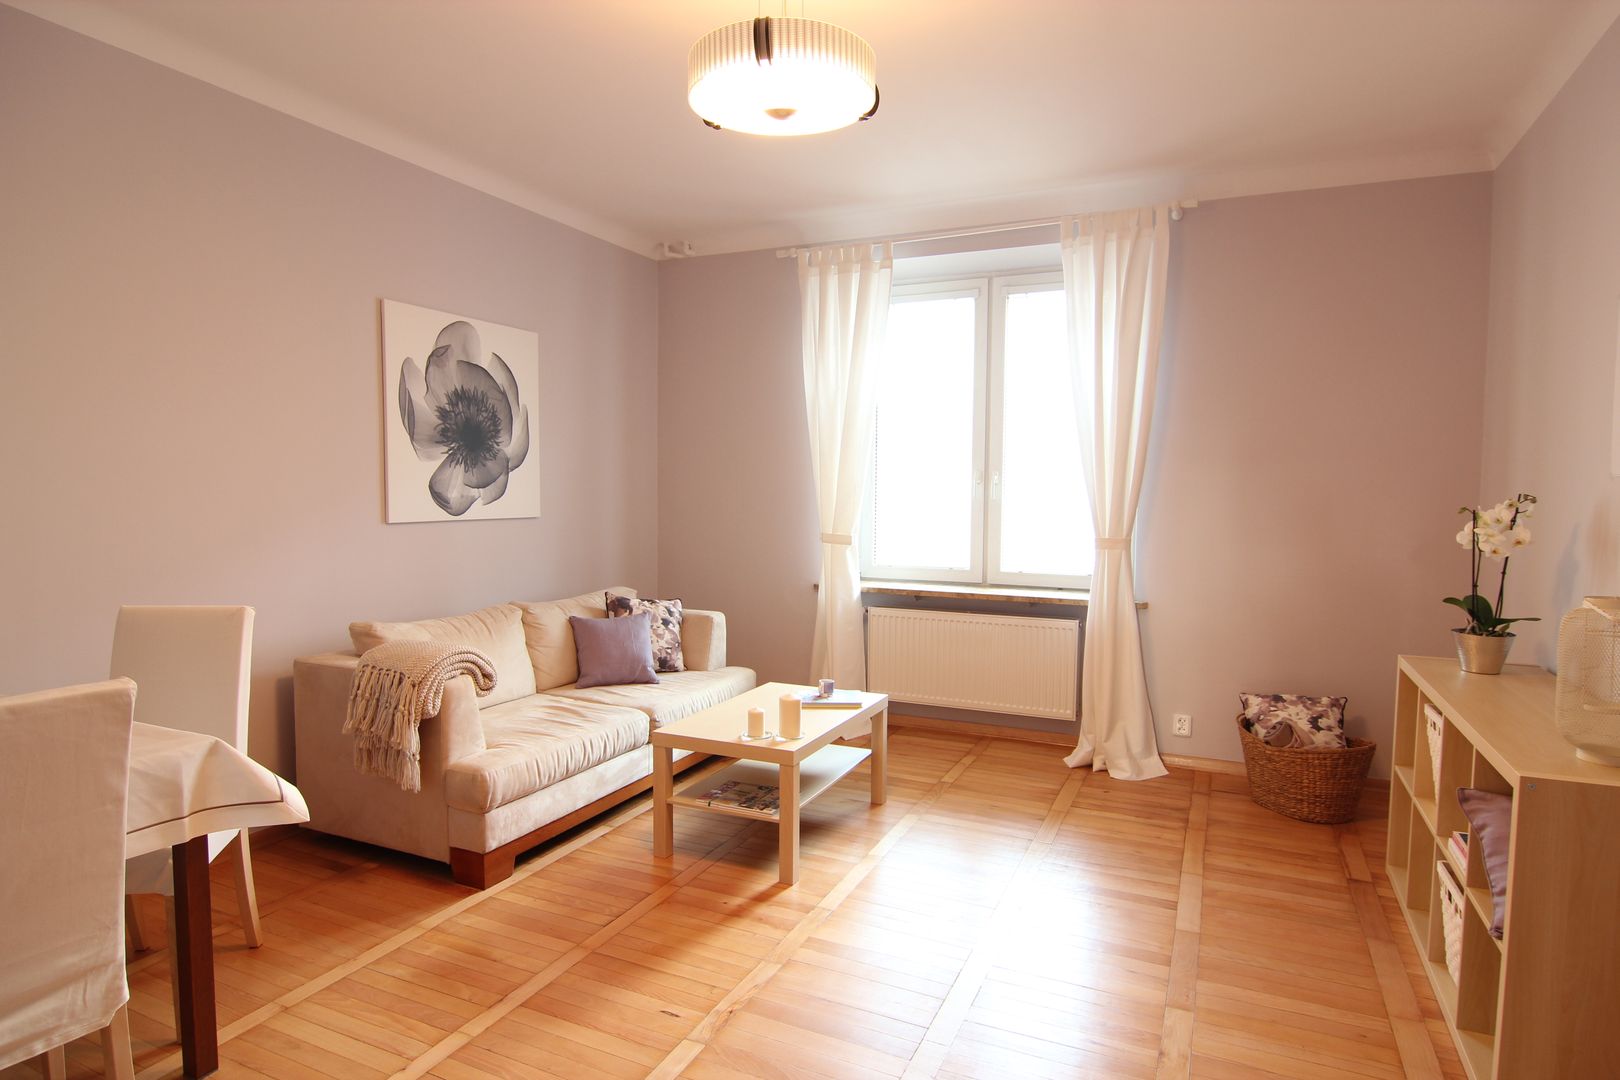 HOME STAGING MIESZKANIA 57M² NA SPRZEDAŻ, Better Home Interior Design Better Home Interior Design